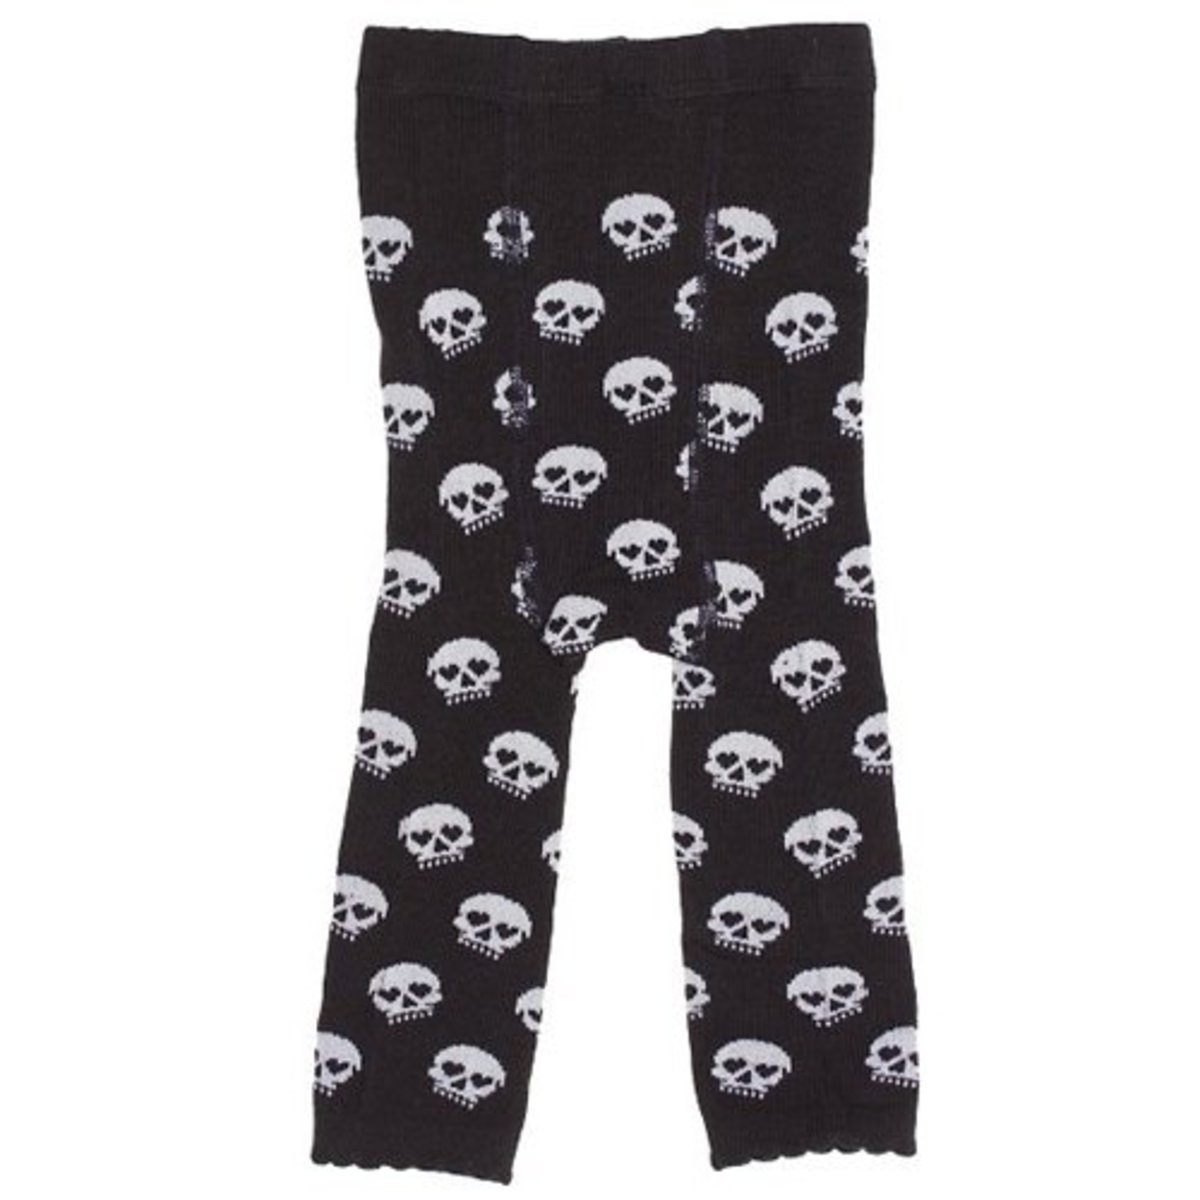 Skull Baby Leggings Black White by Sourpuss Clothing